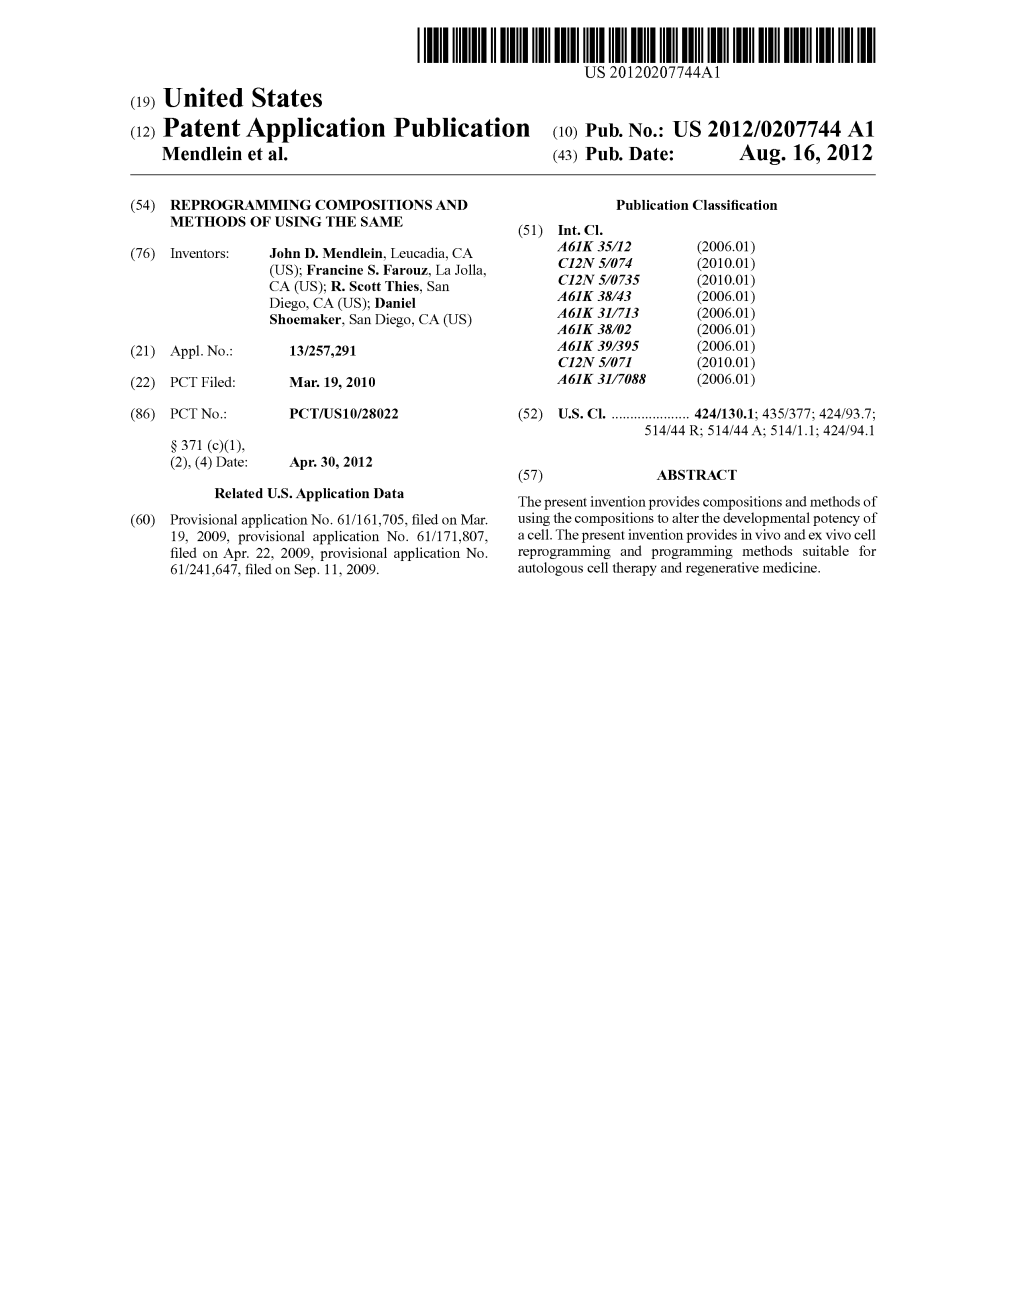 (12) Patent Application Publication (10) Pub. No.: US 2012/0207744 A1 Mendlein Et Al